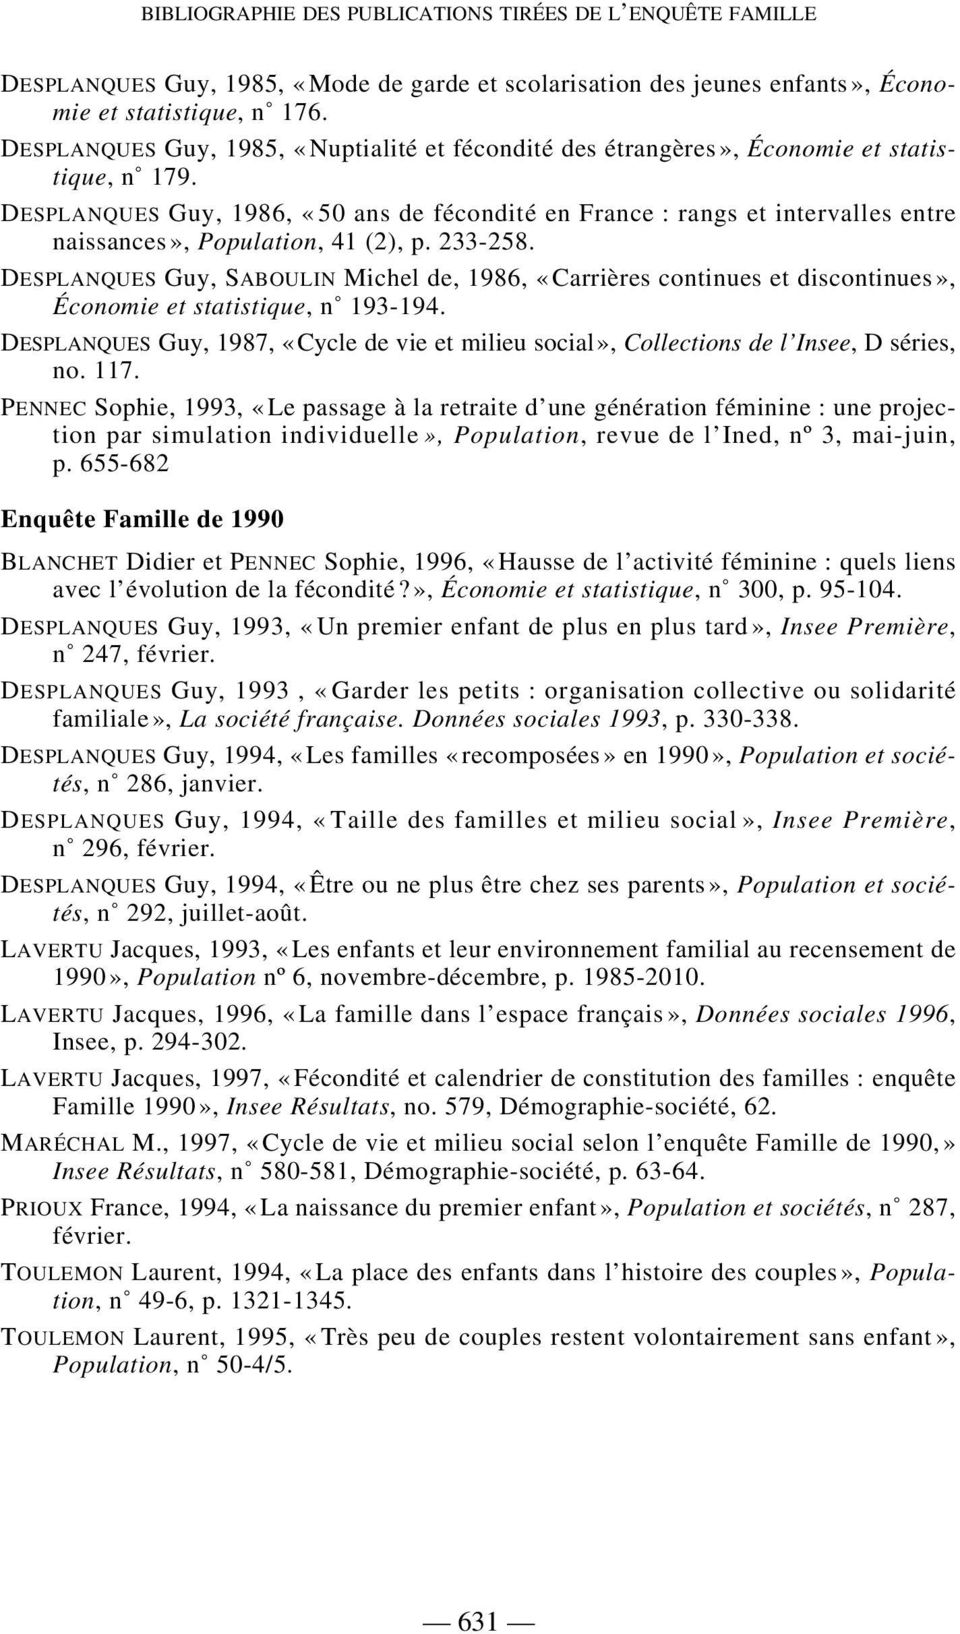 DESPLANQUES Guy, 1986, «50 ans de fécondité en France : rangs et intervalles entre naissances», Population, 41 (2), p. 233-258.